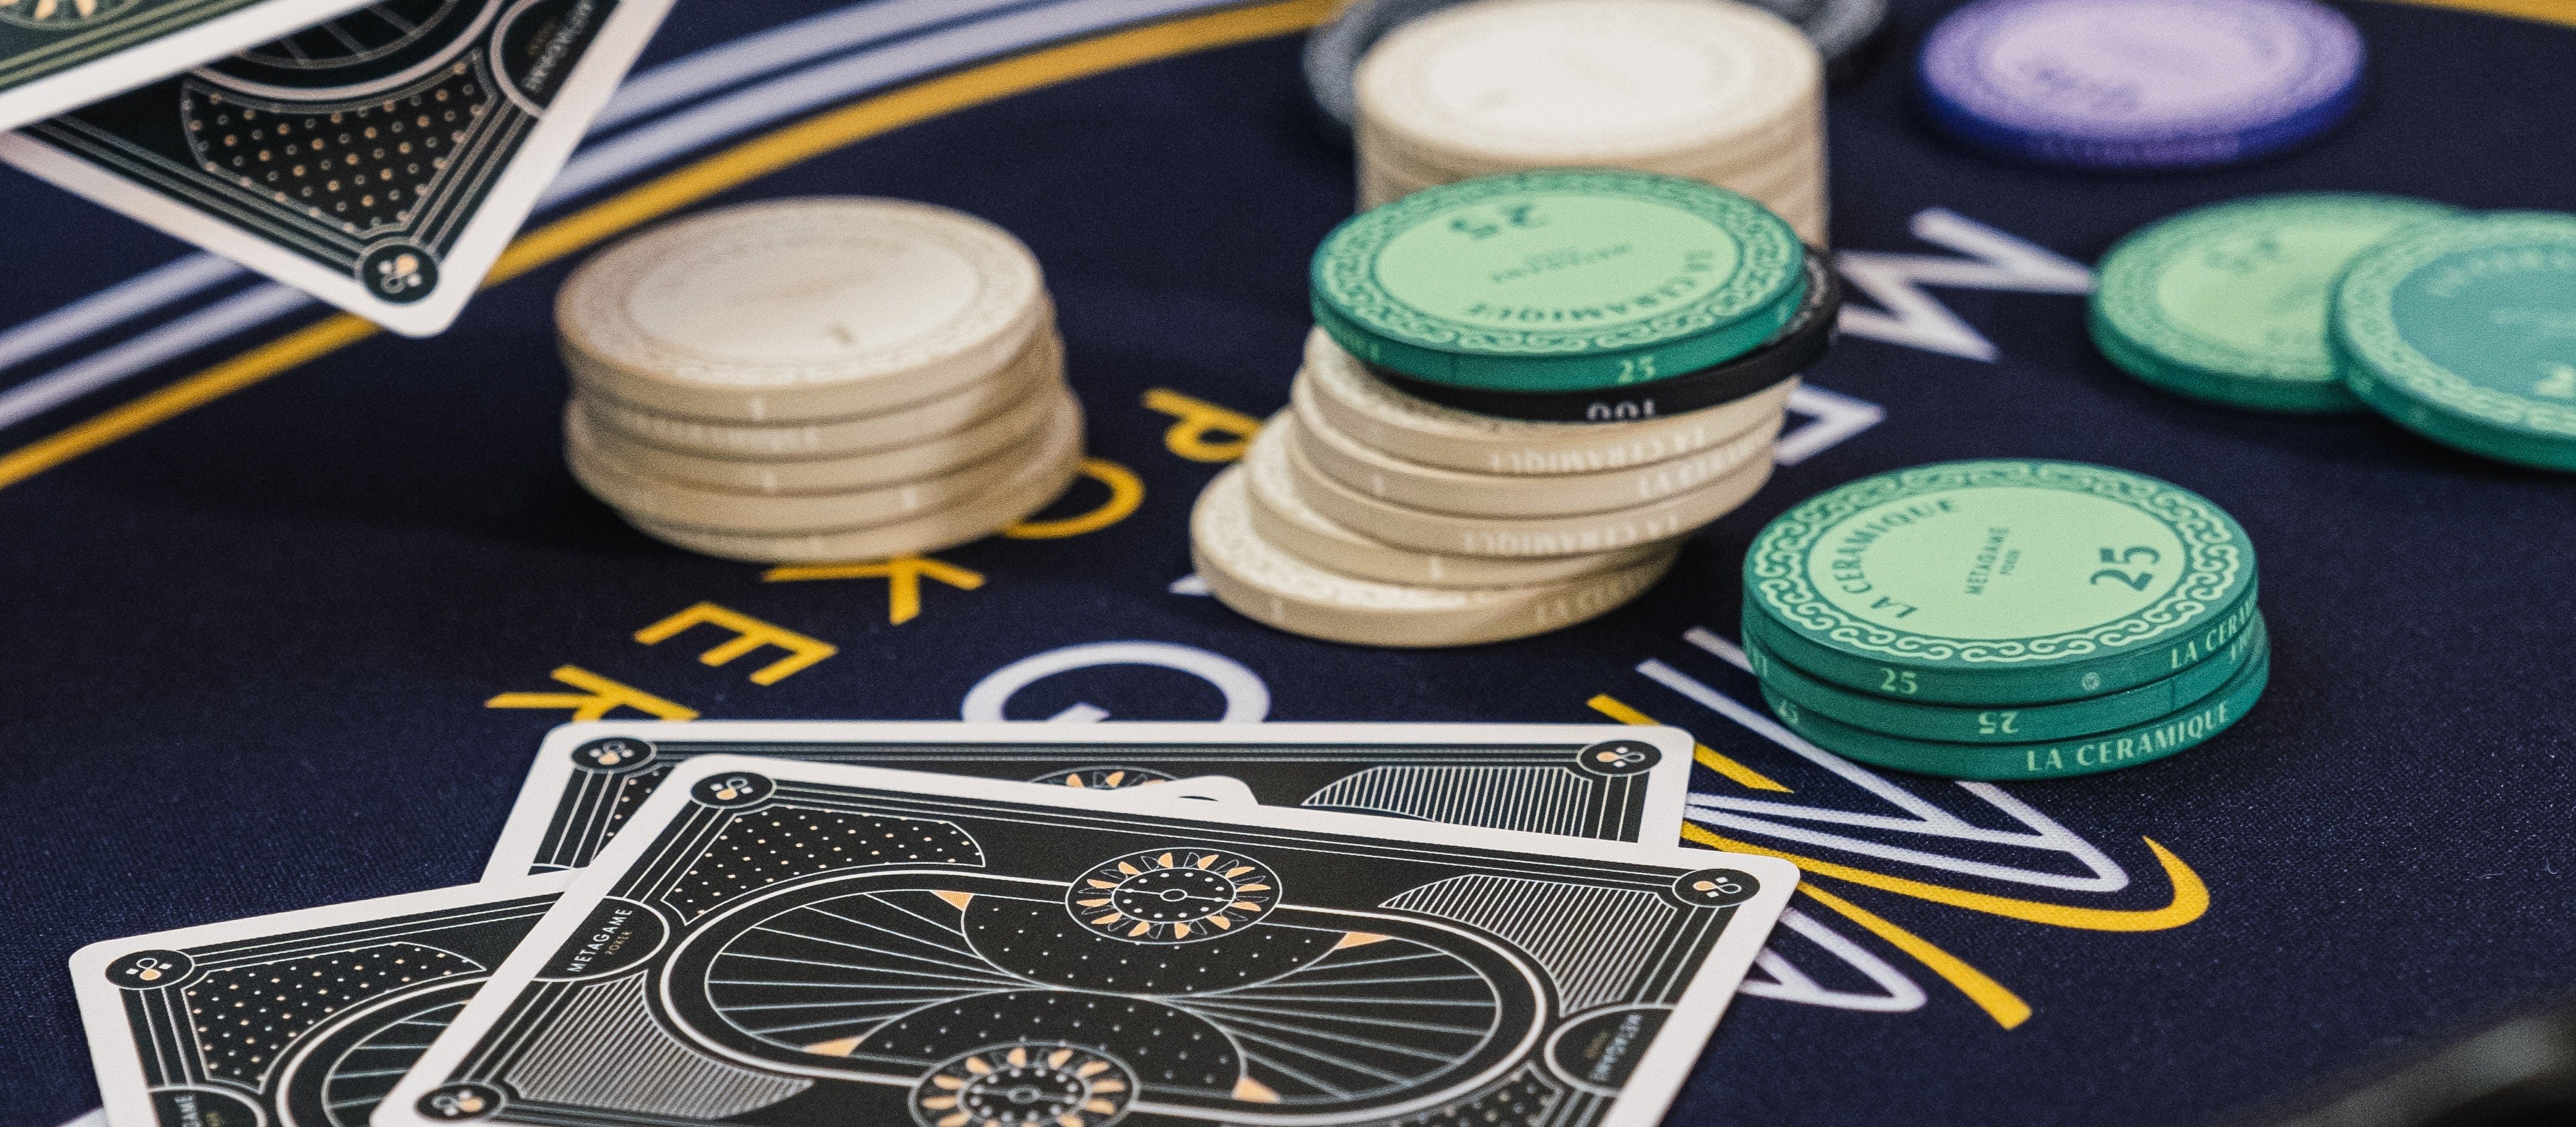 Matériel de poker qualité casino haut de gamme